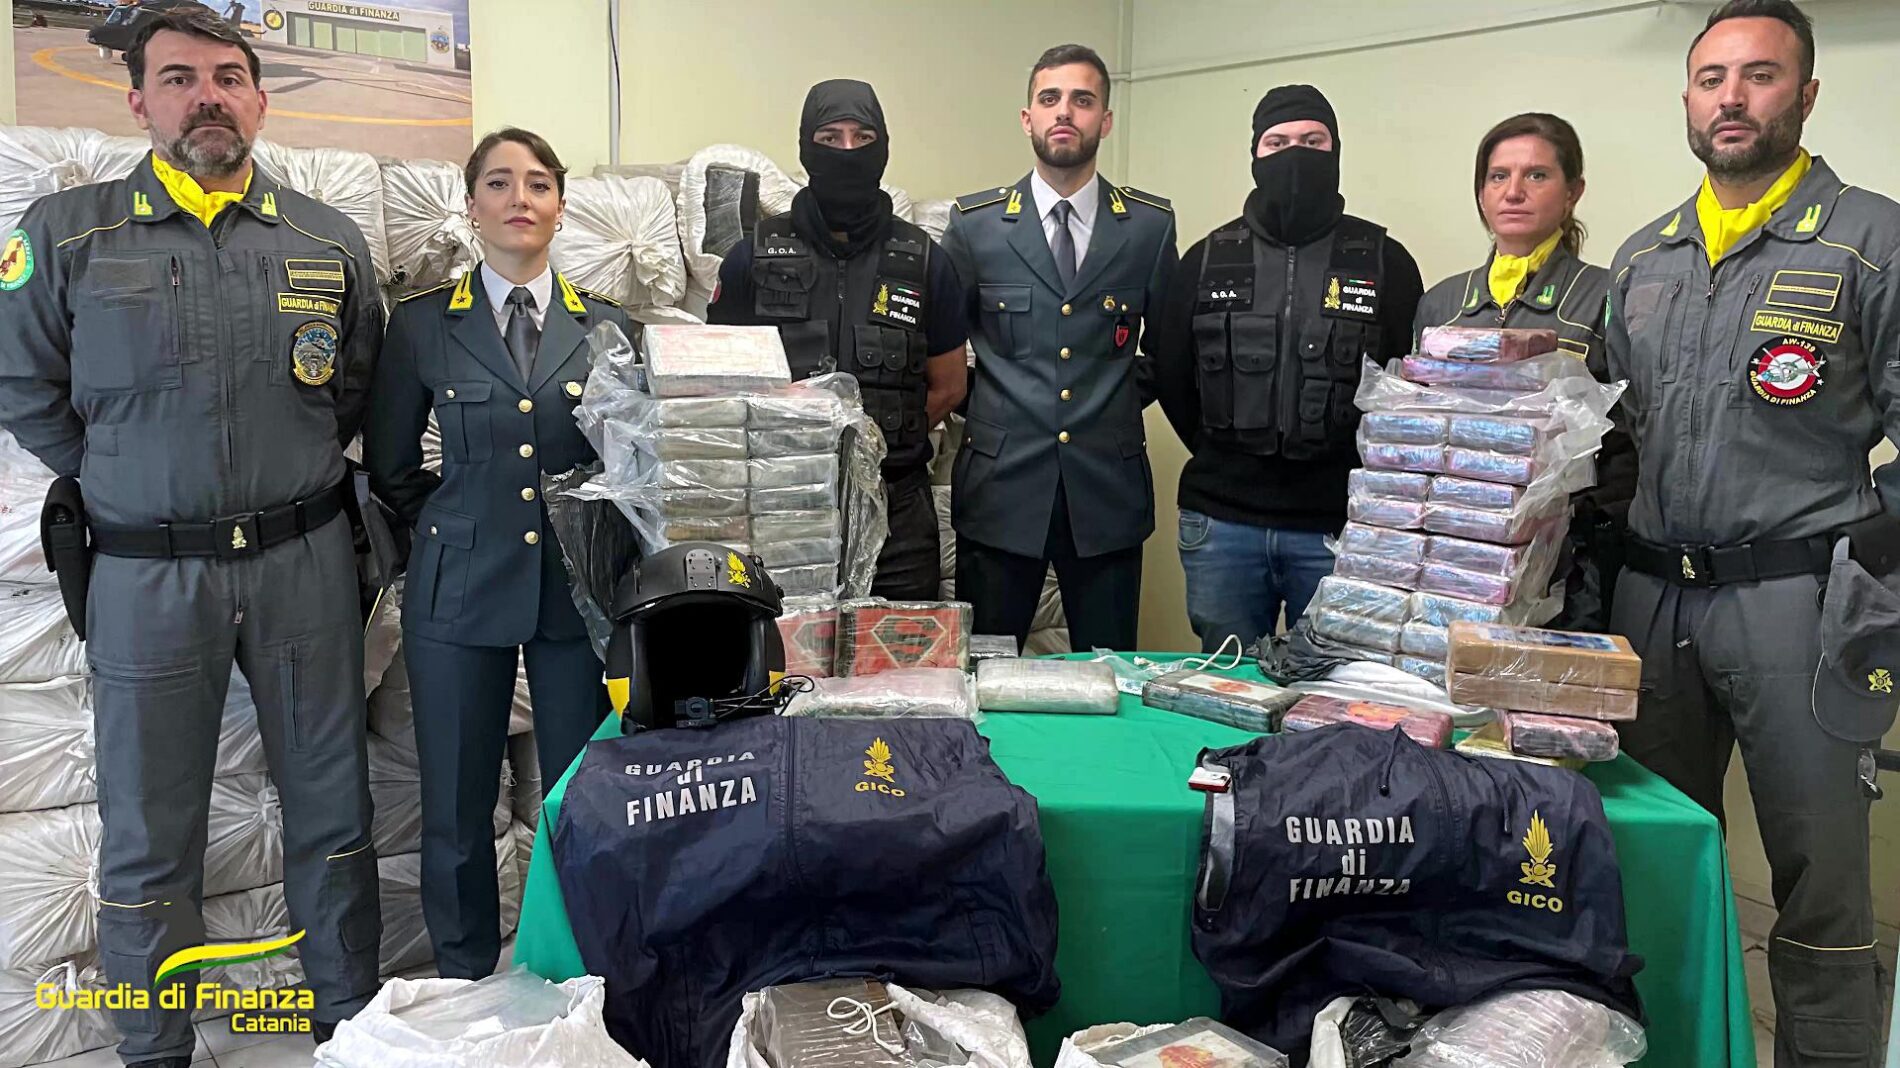 GDF CATANIA. Attività di contrasto al traffico di sostanze stupefacenti. Sequestro record di circa 2 tonnellate di cocaina del valore di oltre 400 milioni di euro.